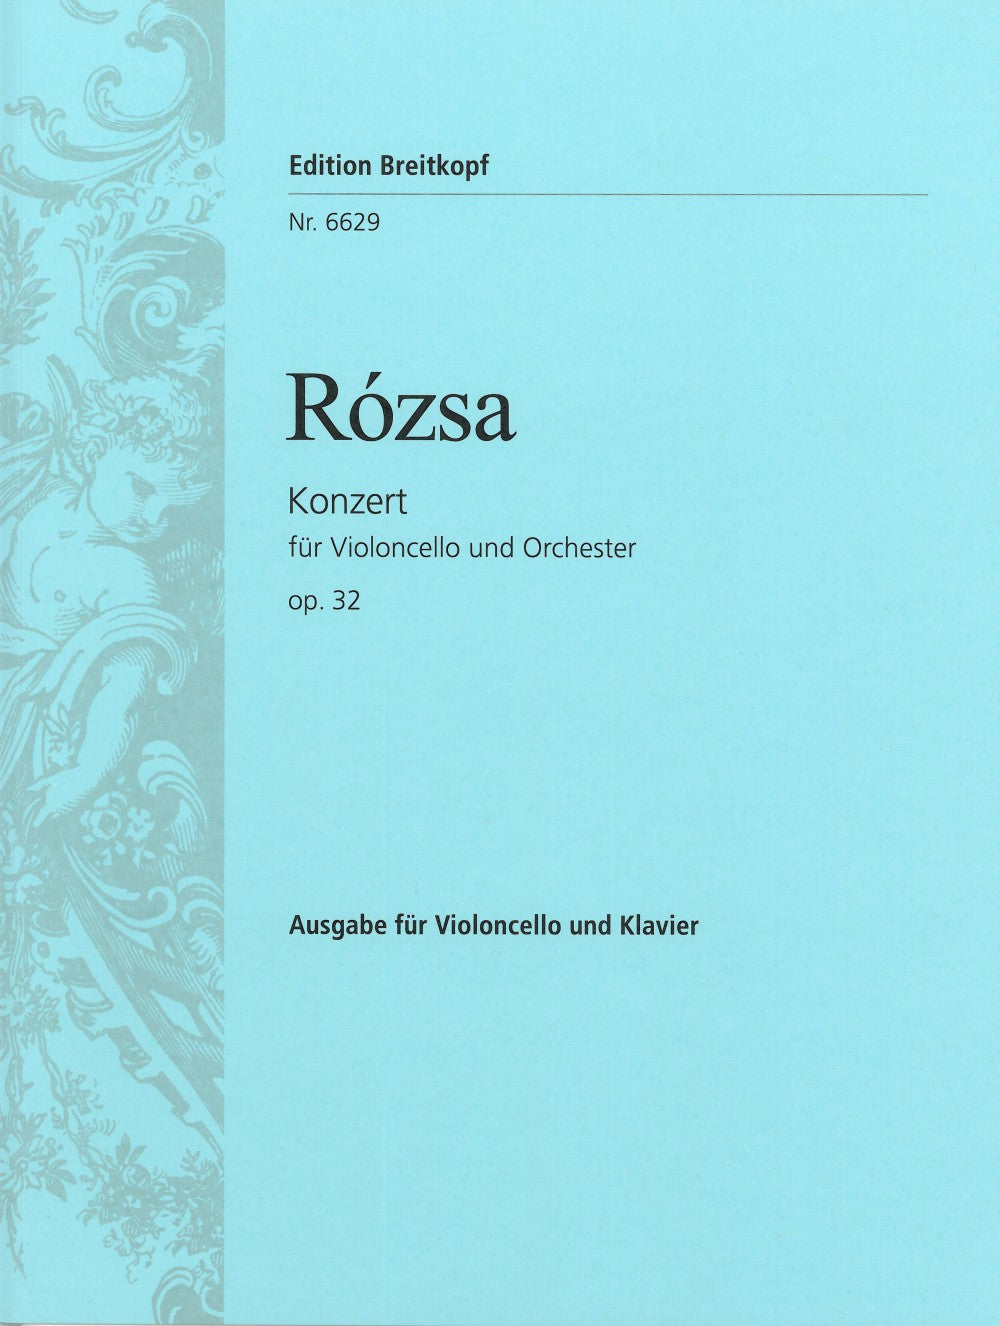 Rózsa: Cello Concerto, Op. 32